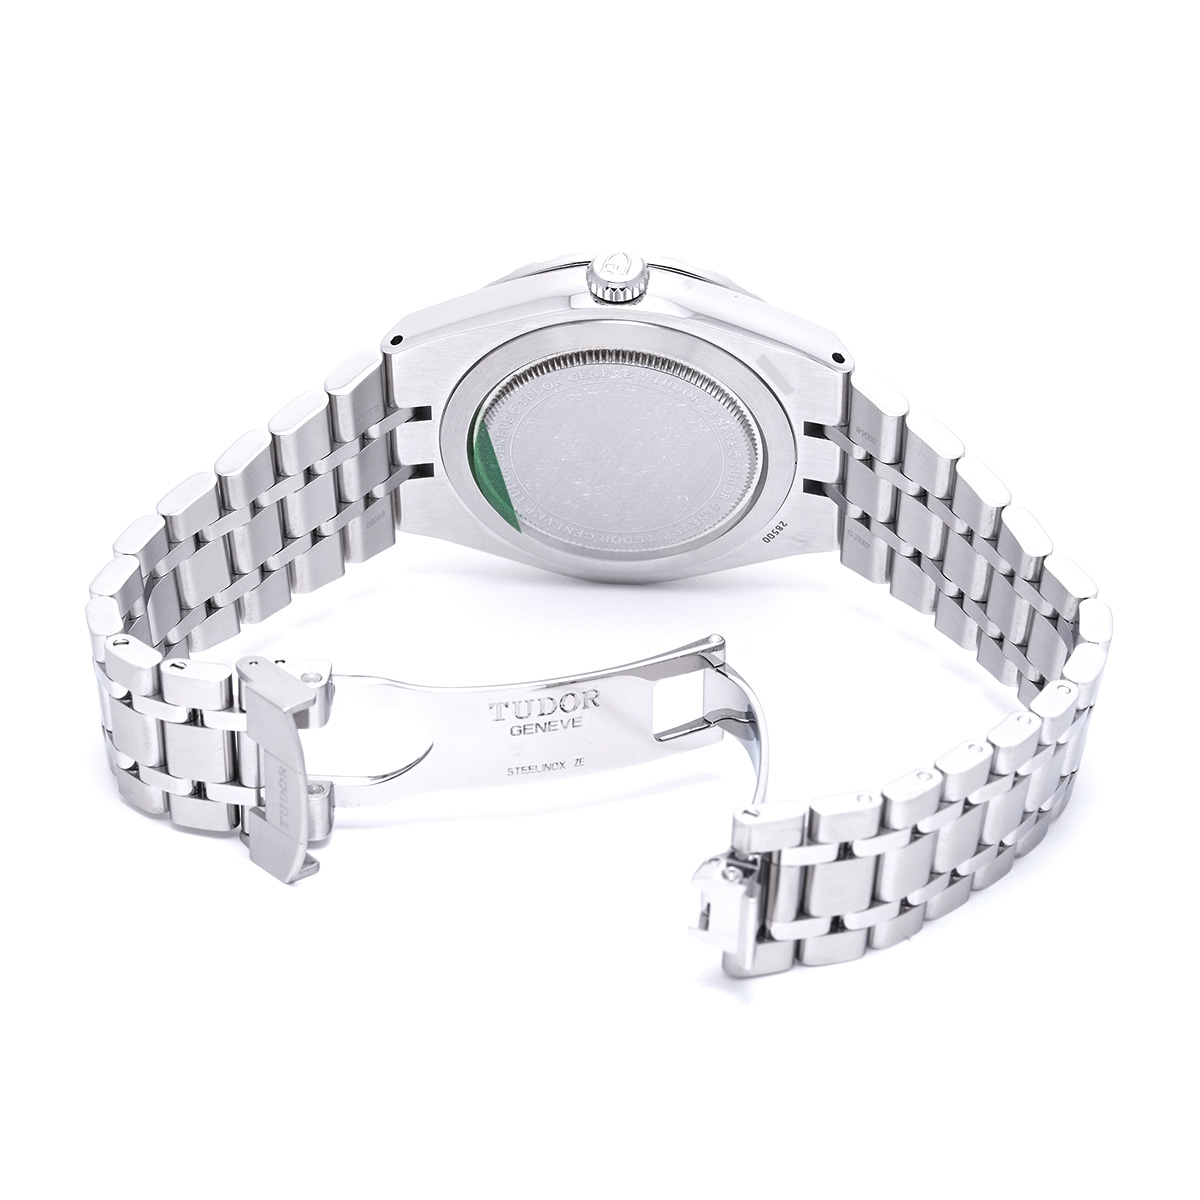 チューダー / チュードル / TUDOR ロイヤル 28500 ブラック メンズ 時計 【中古】【wristwatch】